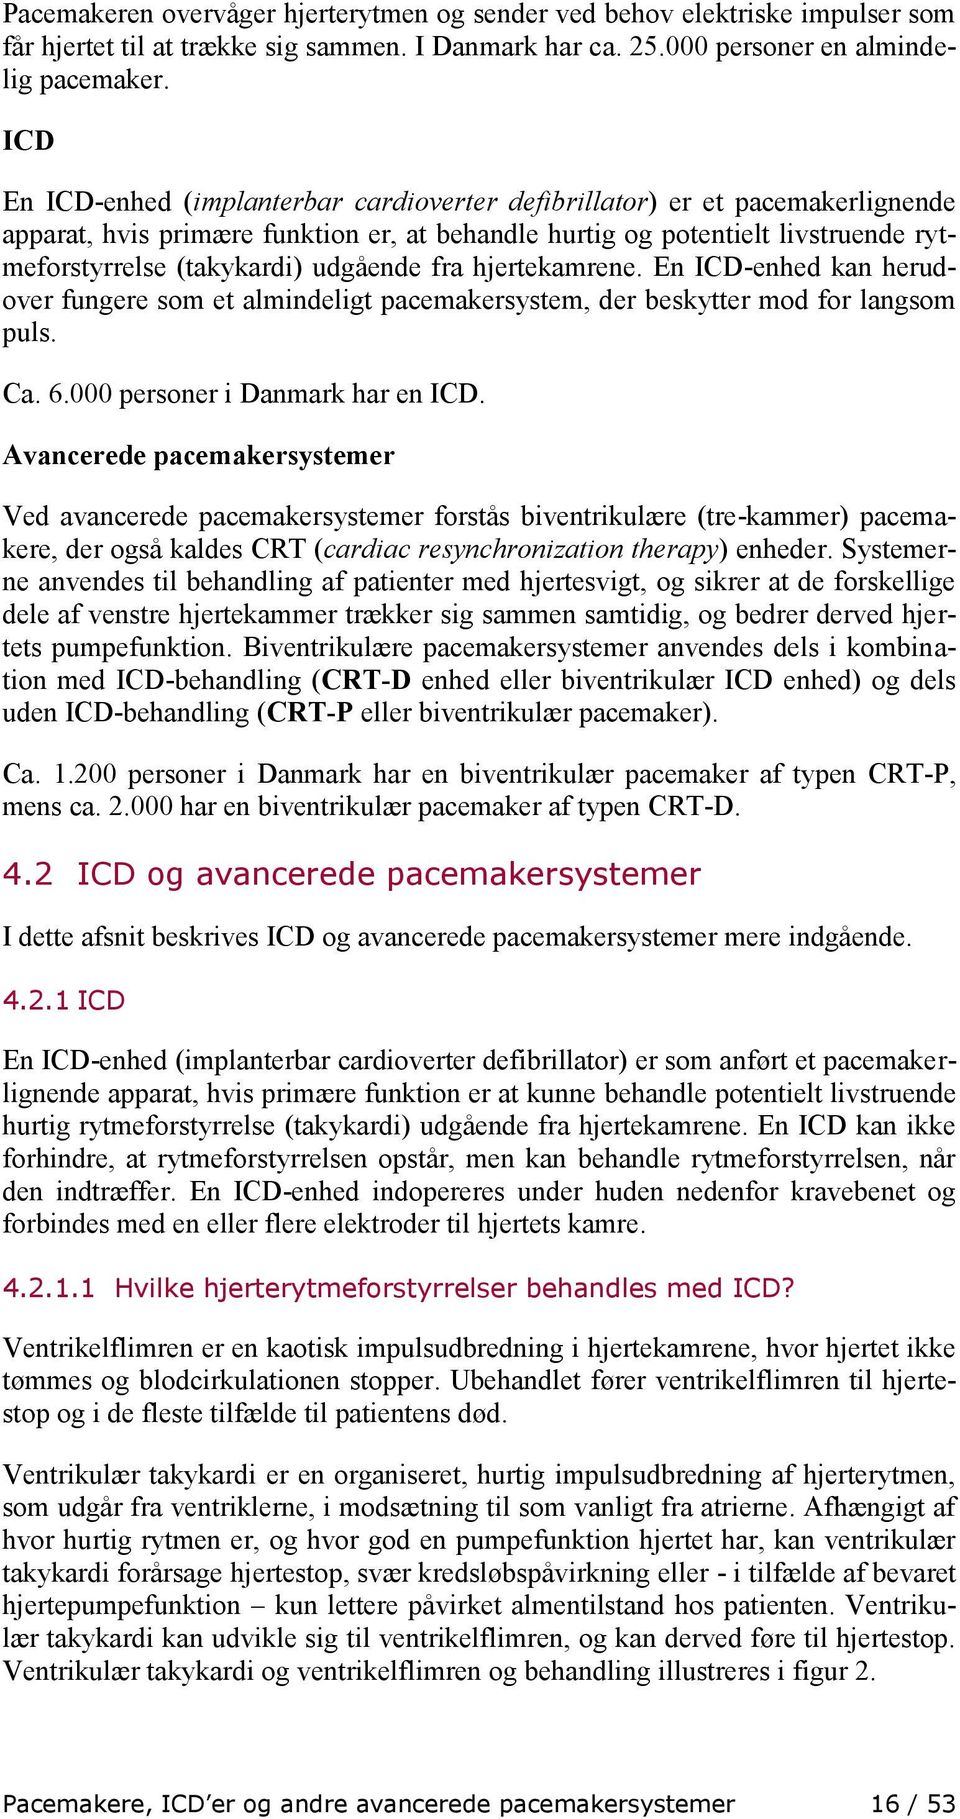 udgående fra hjertekamrene. En ICD-enhed kan herudover fungere som et almindeligt pacemakersystem, der beskytter mod for langsom puls. Ca. 6.000 personer i Danmark har en ICD.